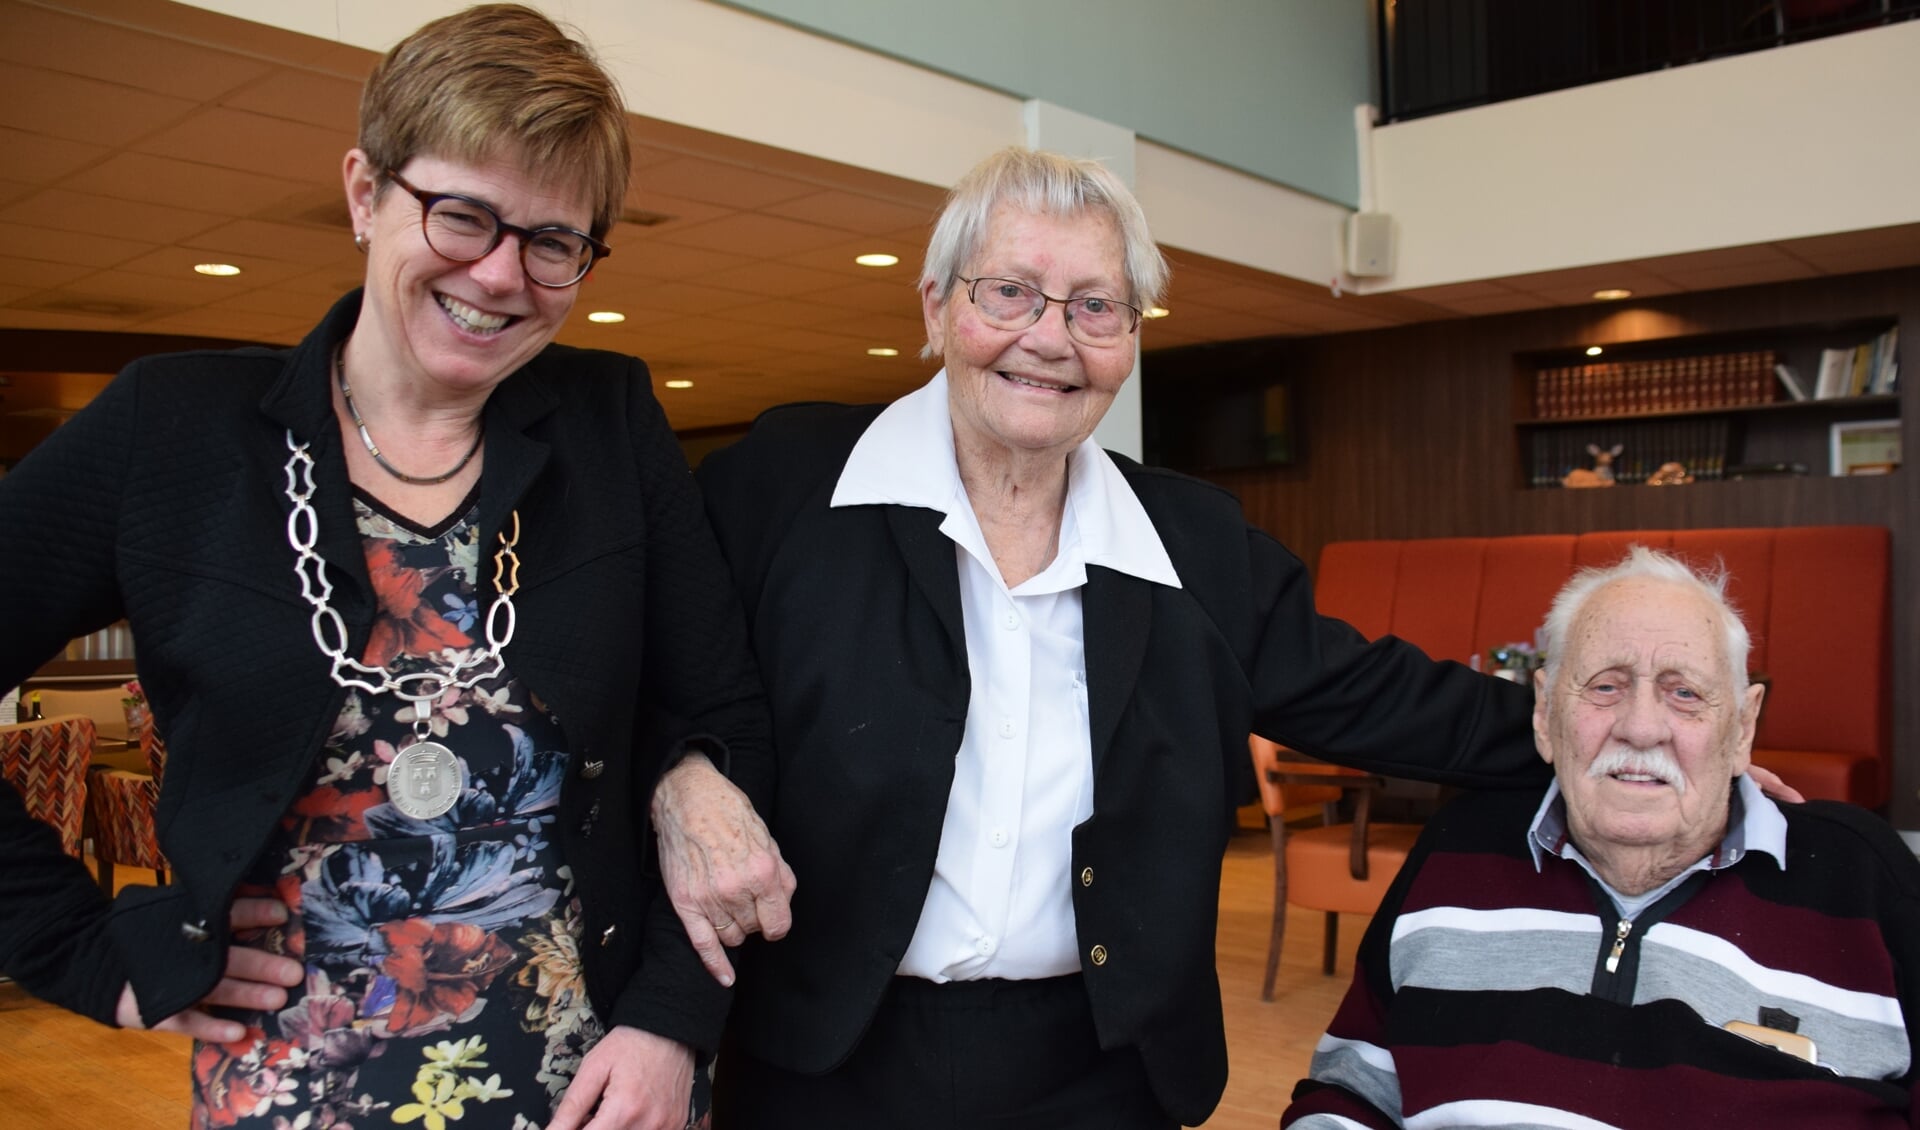 Burgemeester Miranda de Vries feliciteert Bettie en Arie Kranenburg met hun 65-jarig huwelijk. FOTO STELLA MARIJNISSEN